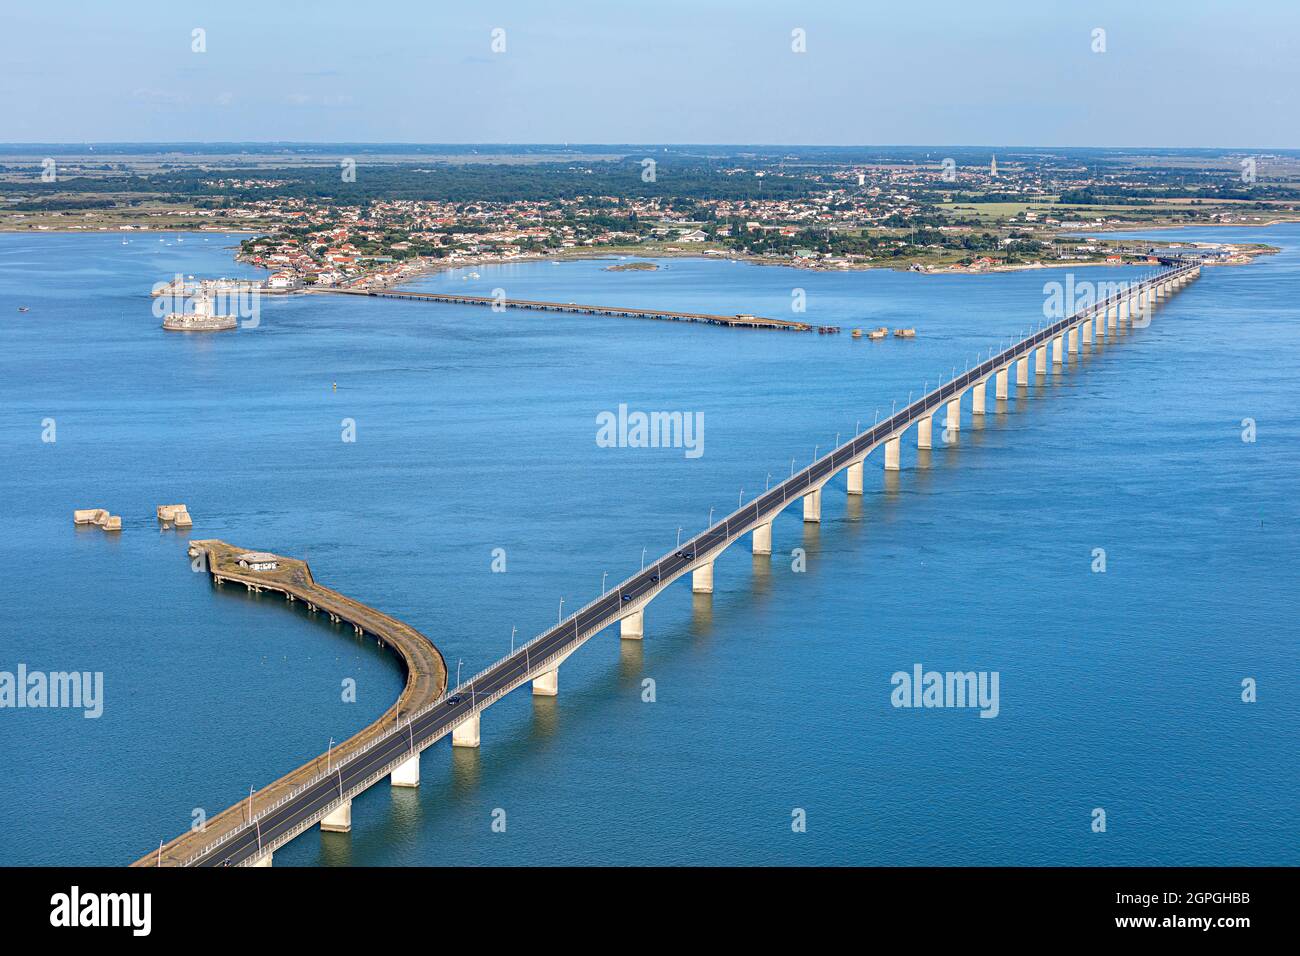 Francia, Charente Maritime, le Chateau d'Oleron, el puente (vista aérea) Foto de stock